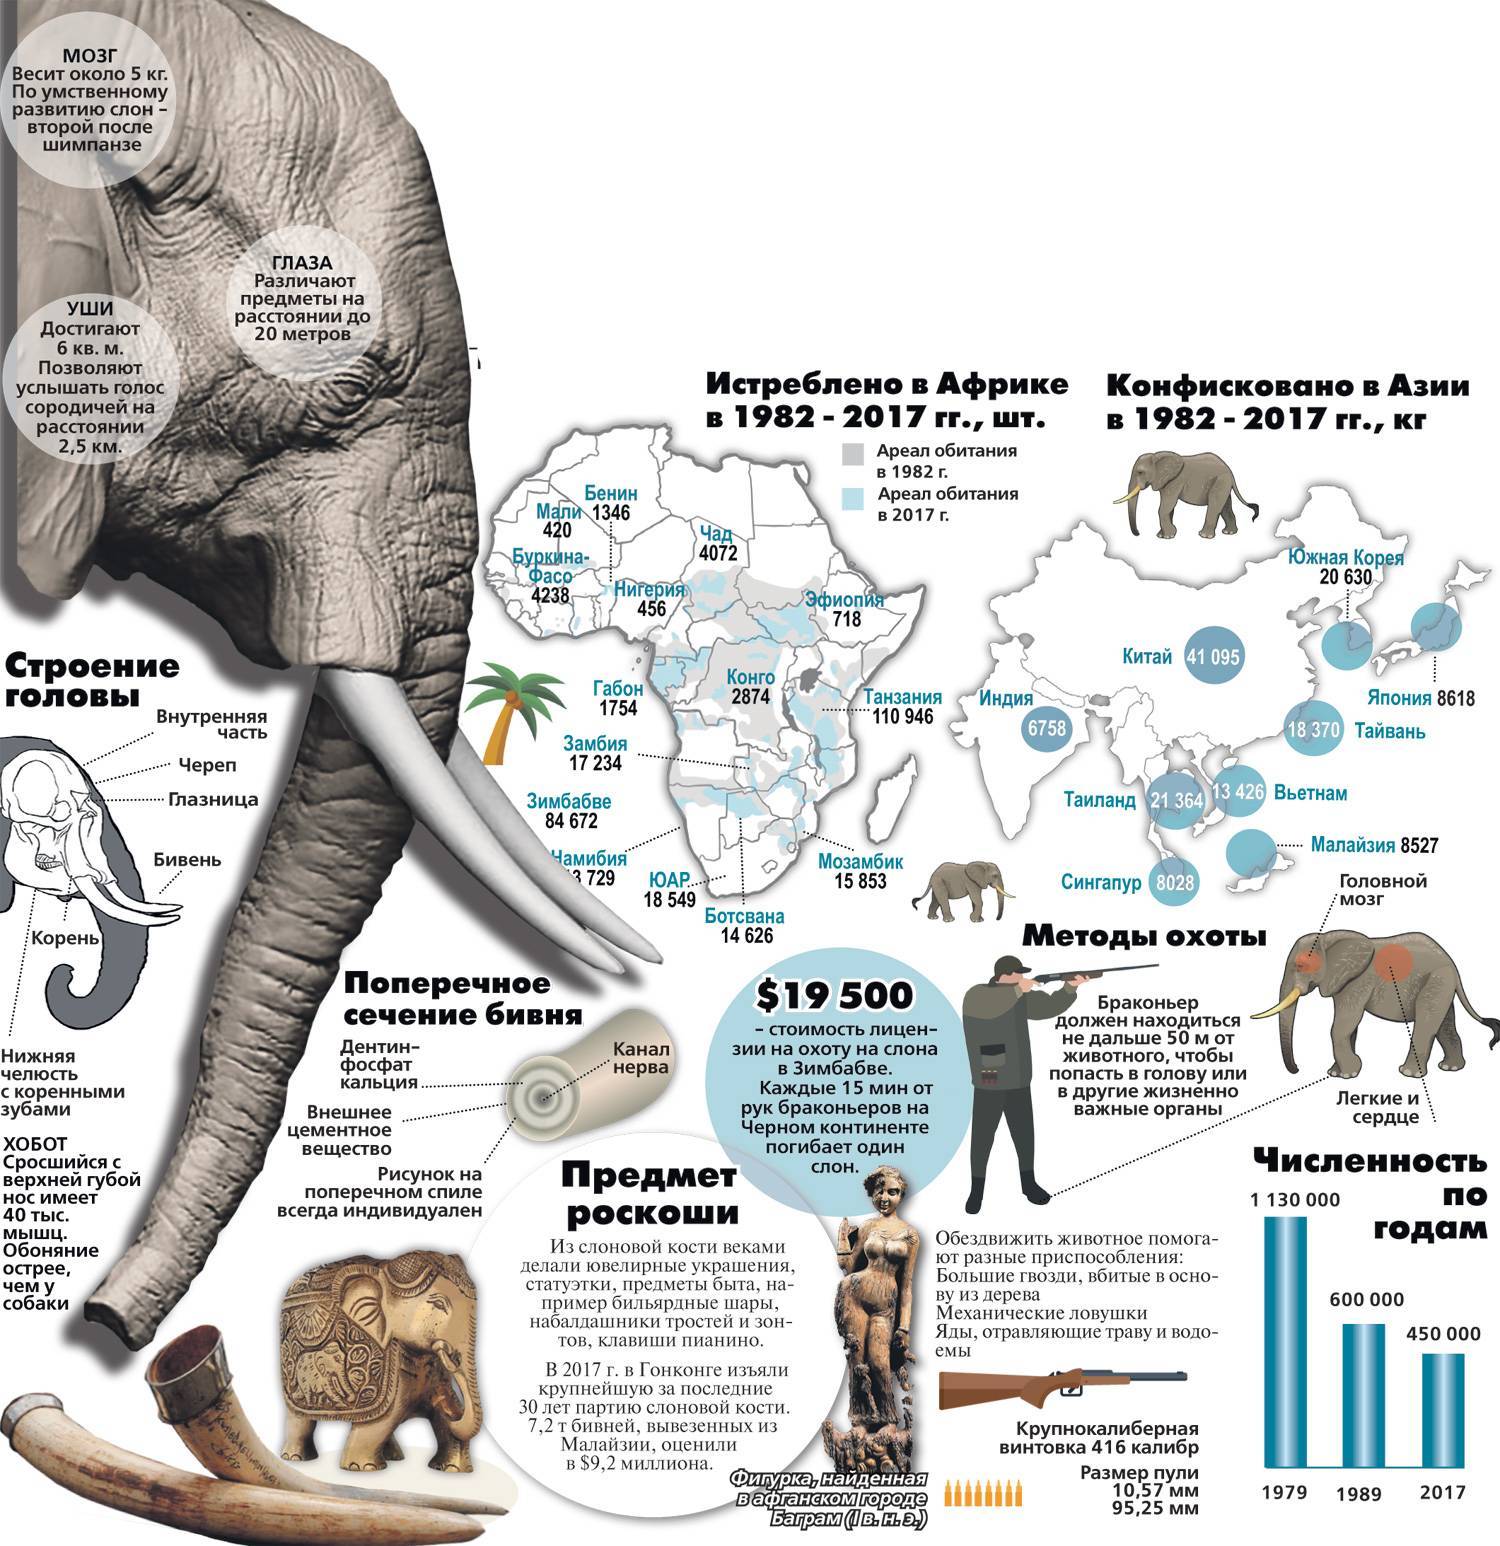 Африканский слон: описание, рост и вес, сколько лет живет